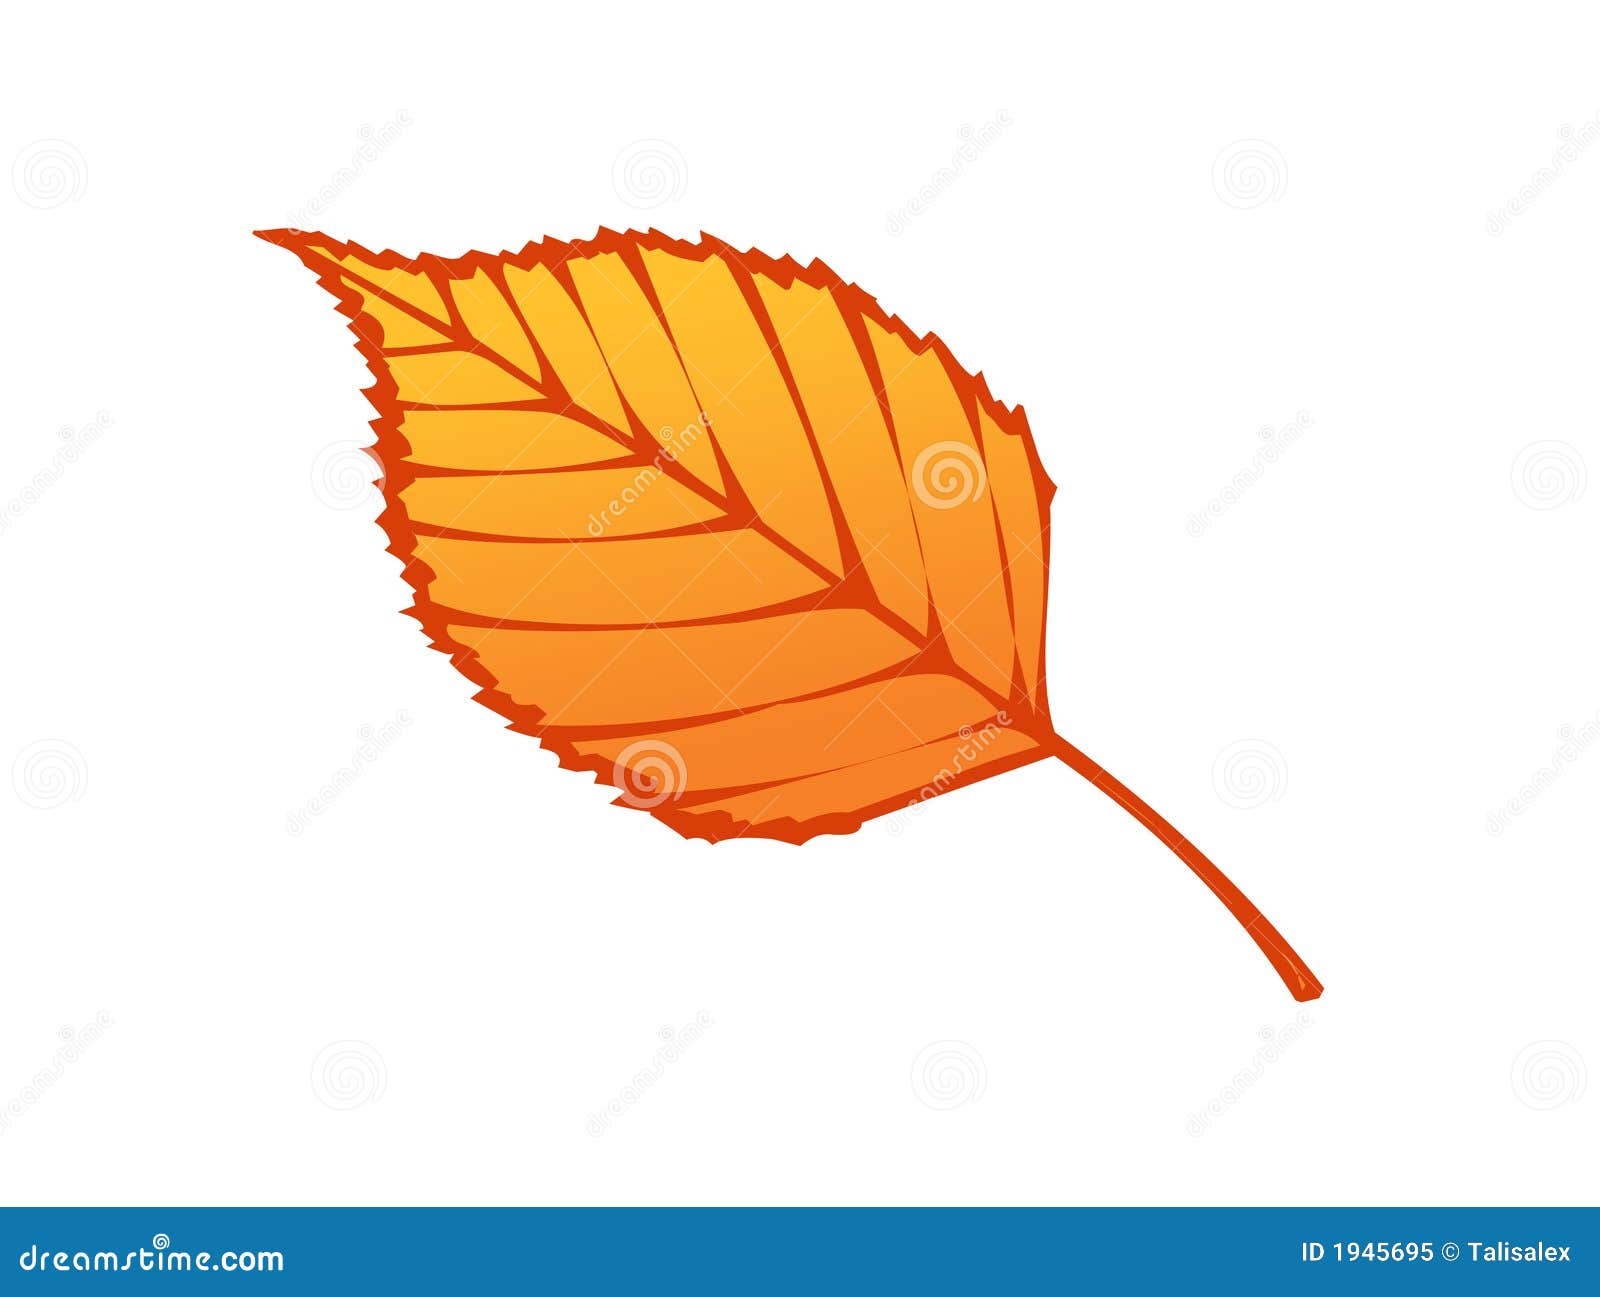 Autumn Leaf Illustration Royalty Free Stock Photo  Image: 1945695